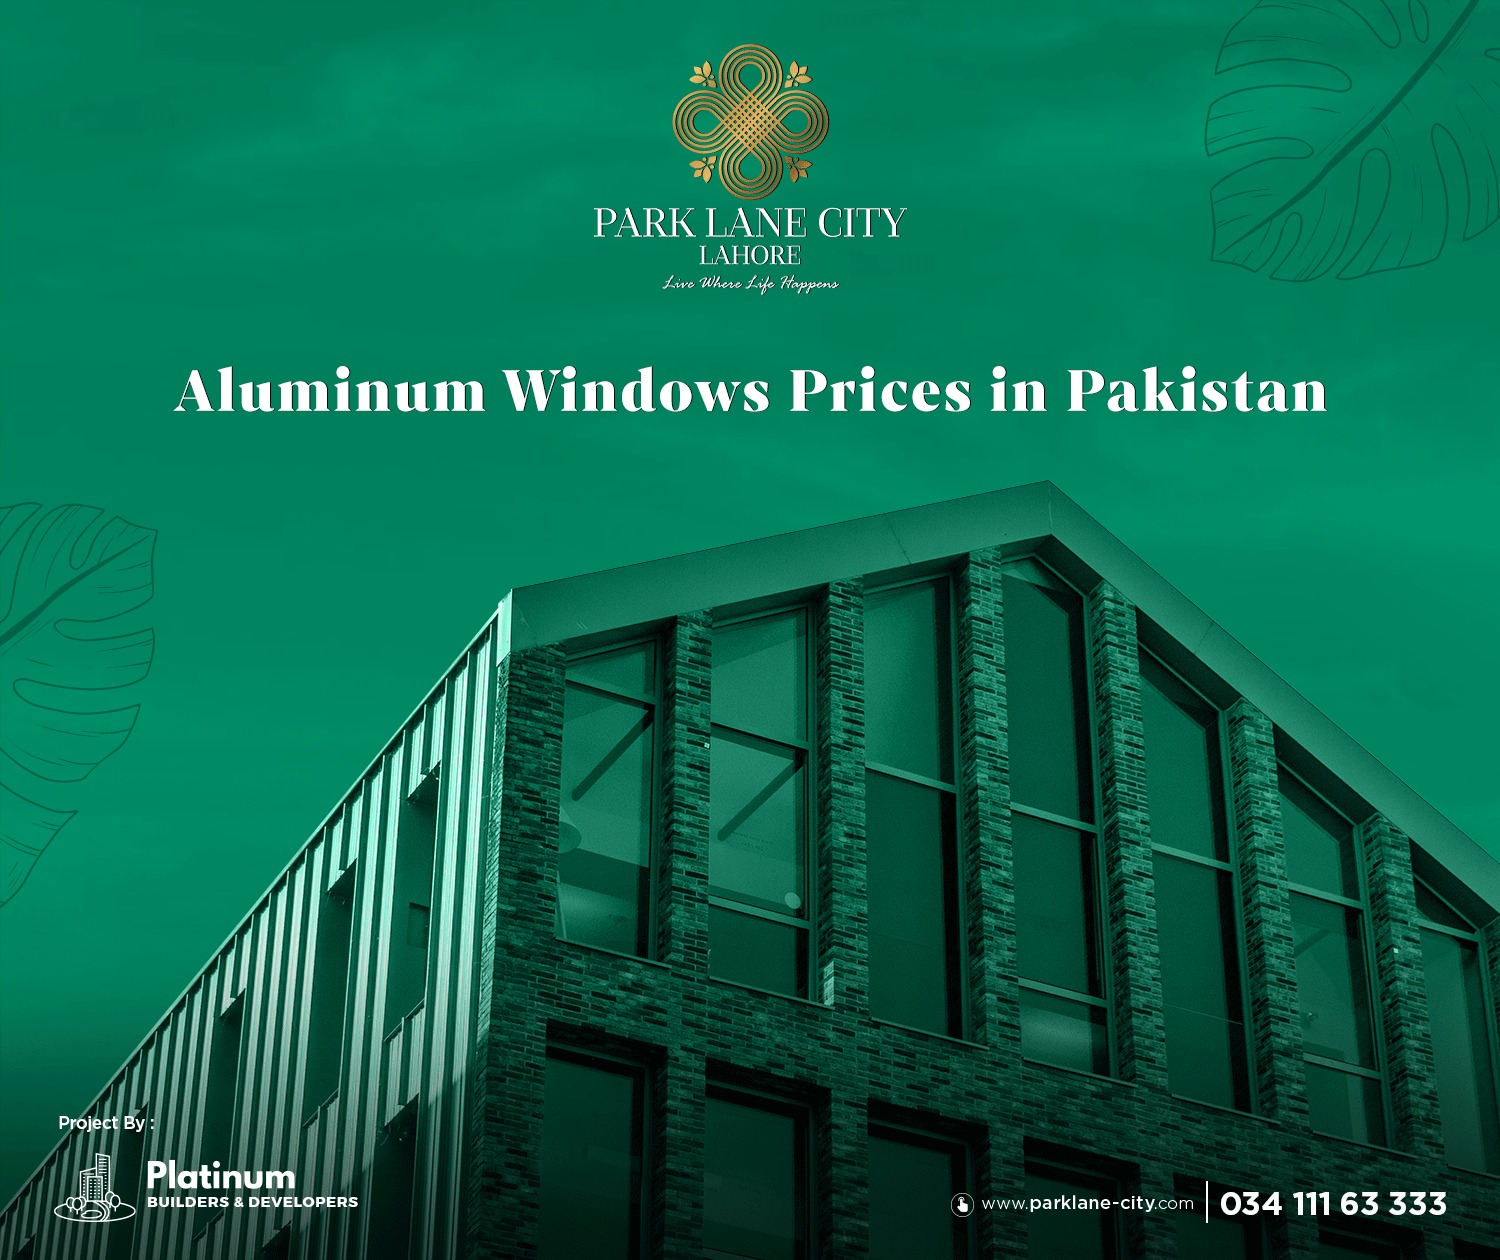 Aluminum Windows Prices in Pakistan